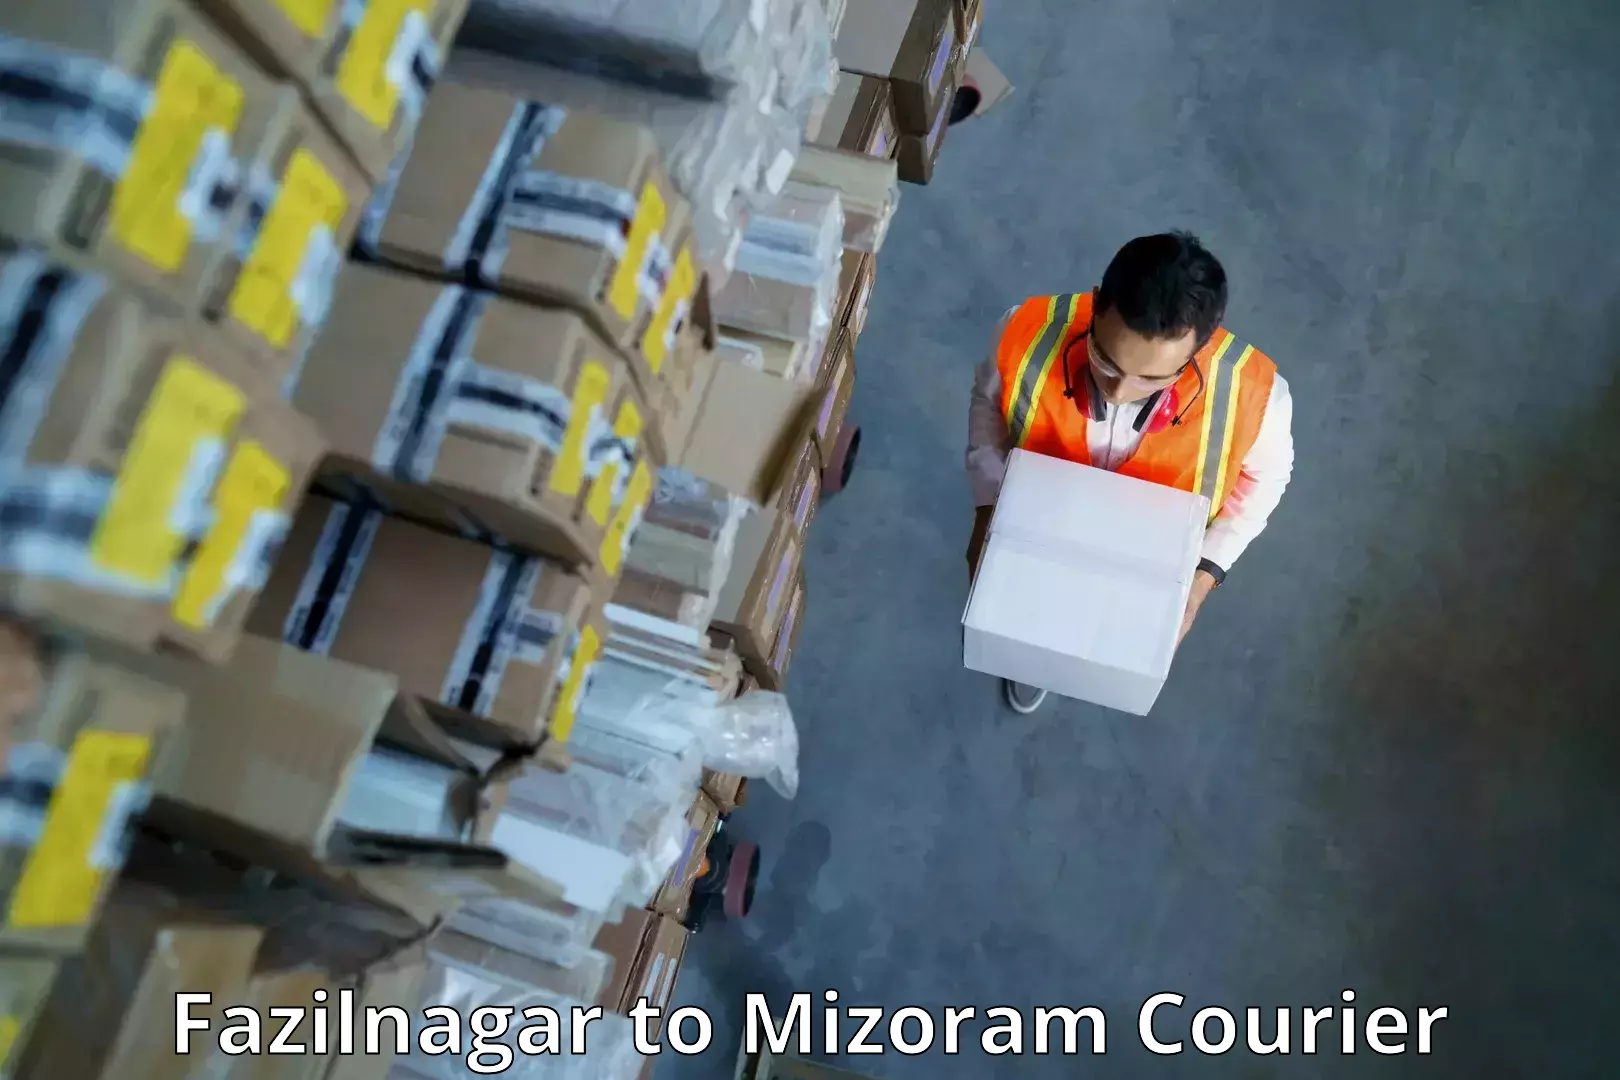 Professional courier handling Fazilnagar to Saitual